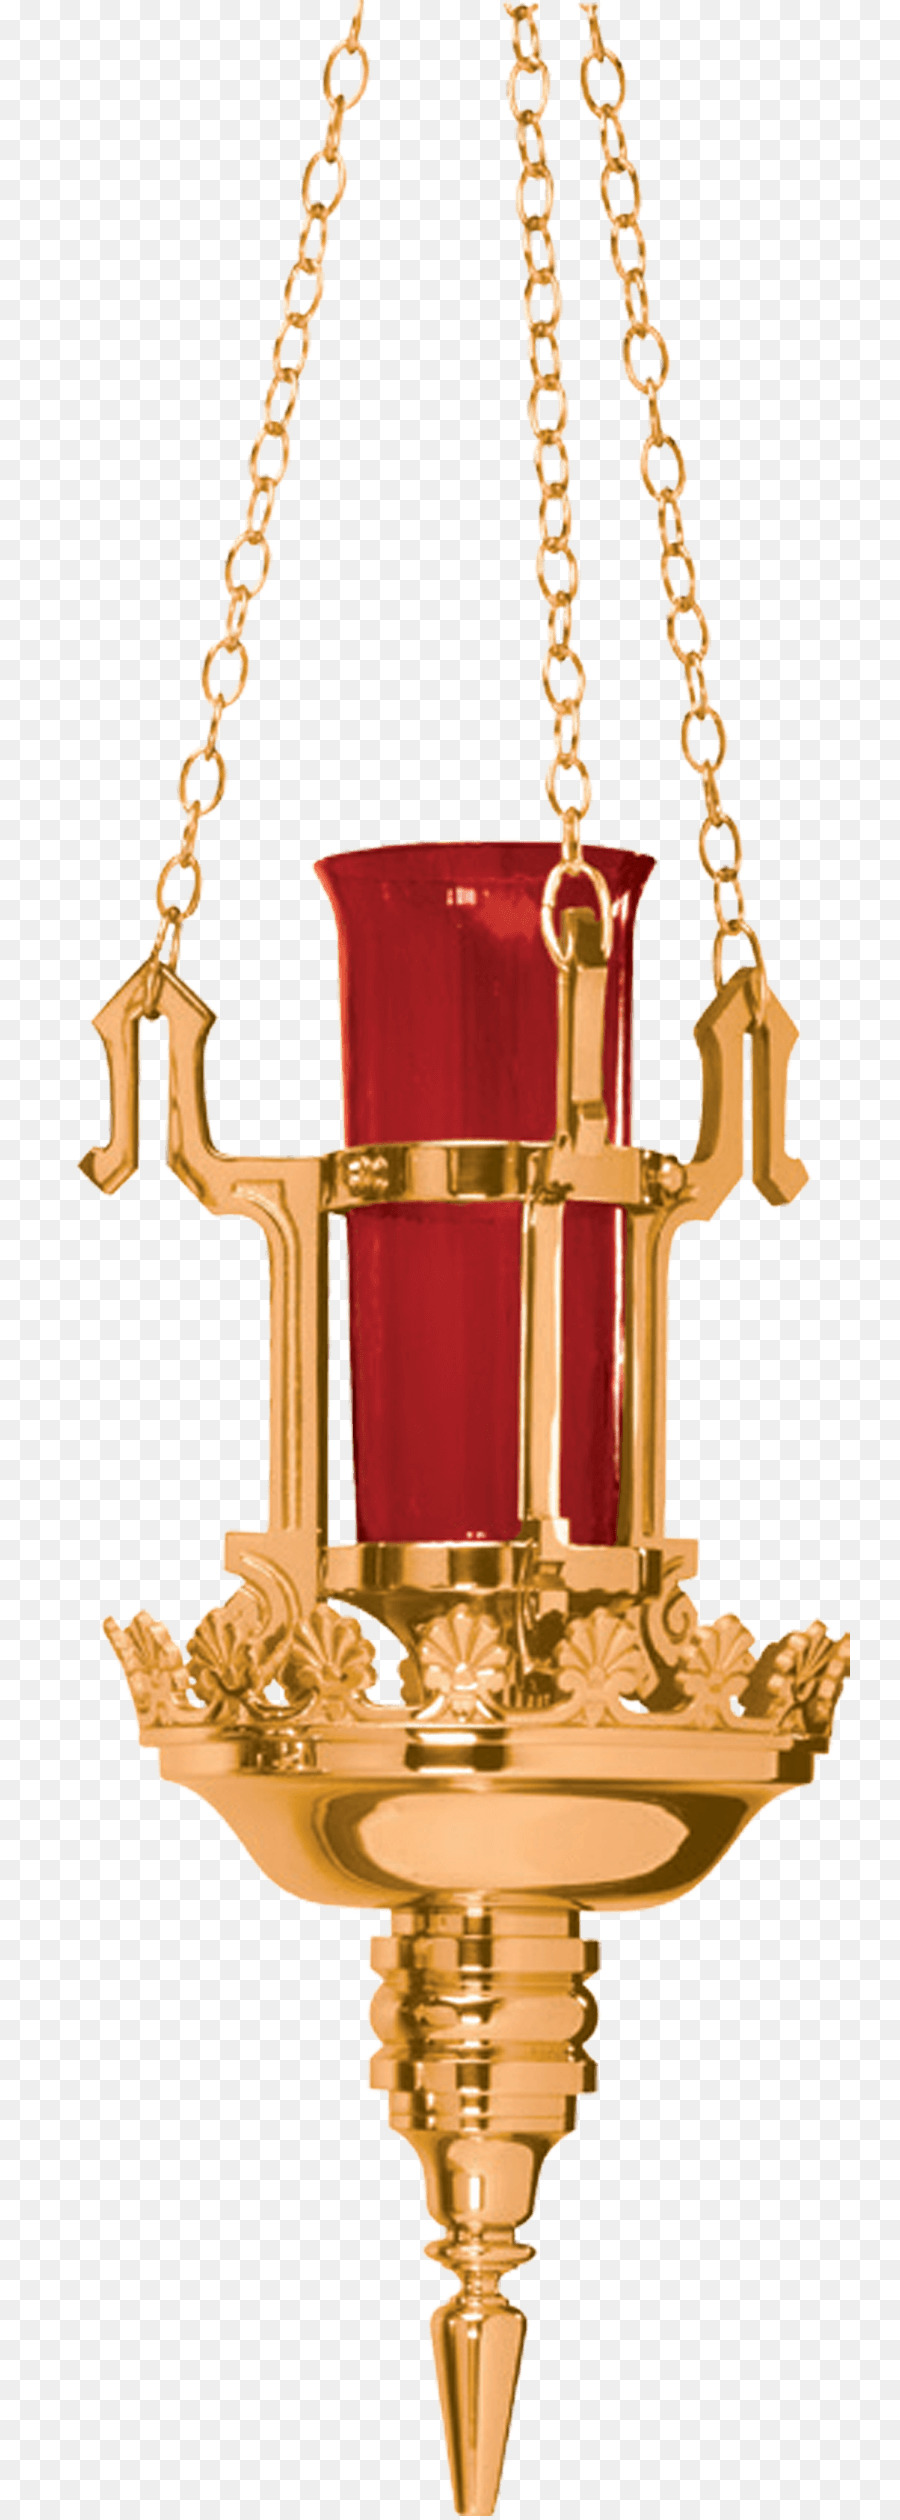 01504 sản Phẩm thiết kế trang trí Giáng sinh Vàng - phong cách tôn giáo đèn chùm